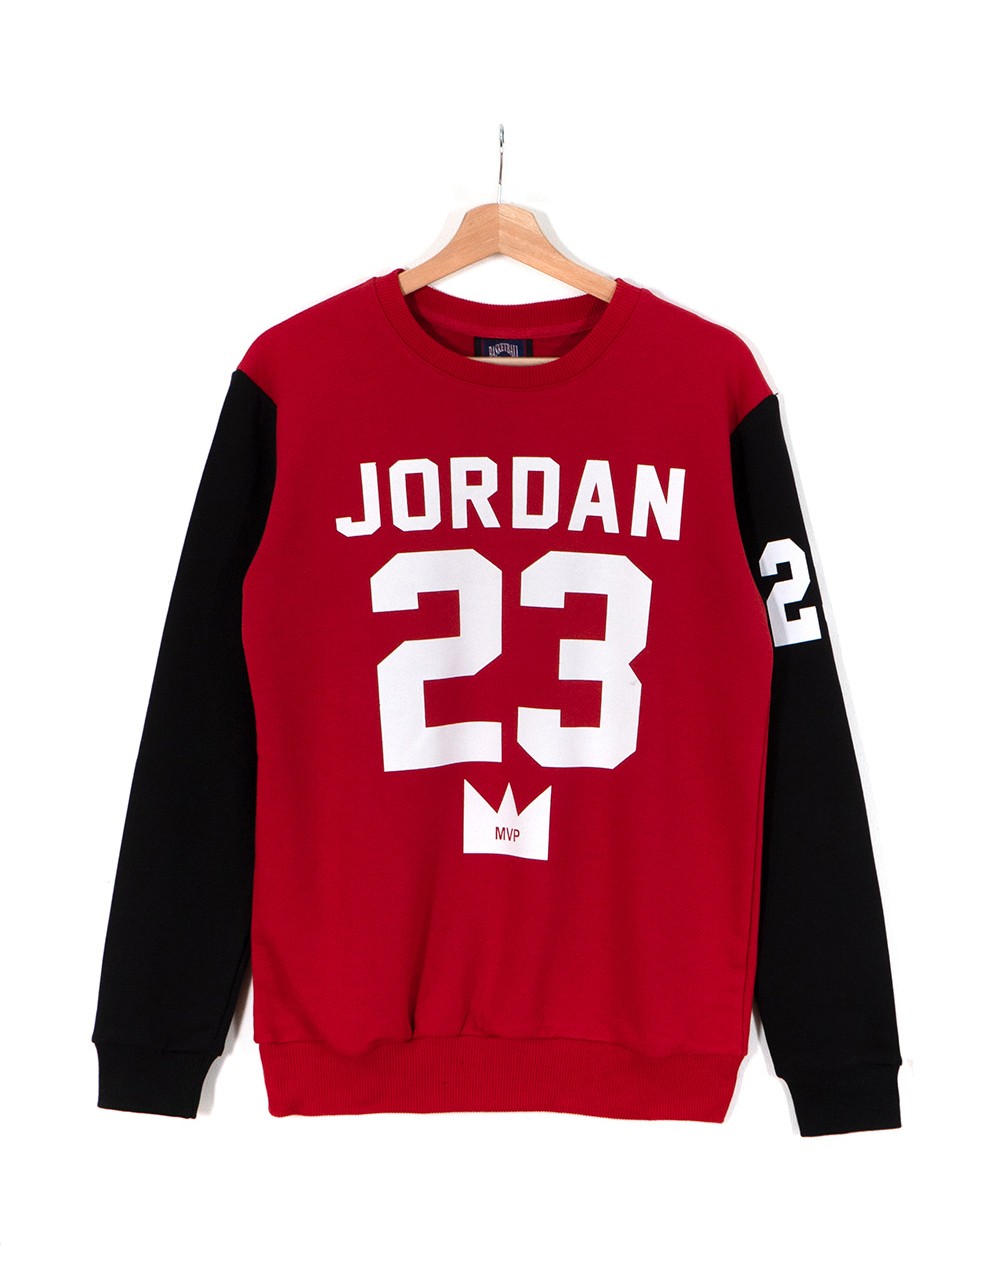 Jordan 23 Erkek Sweatshirt HYP993KZ